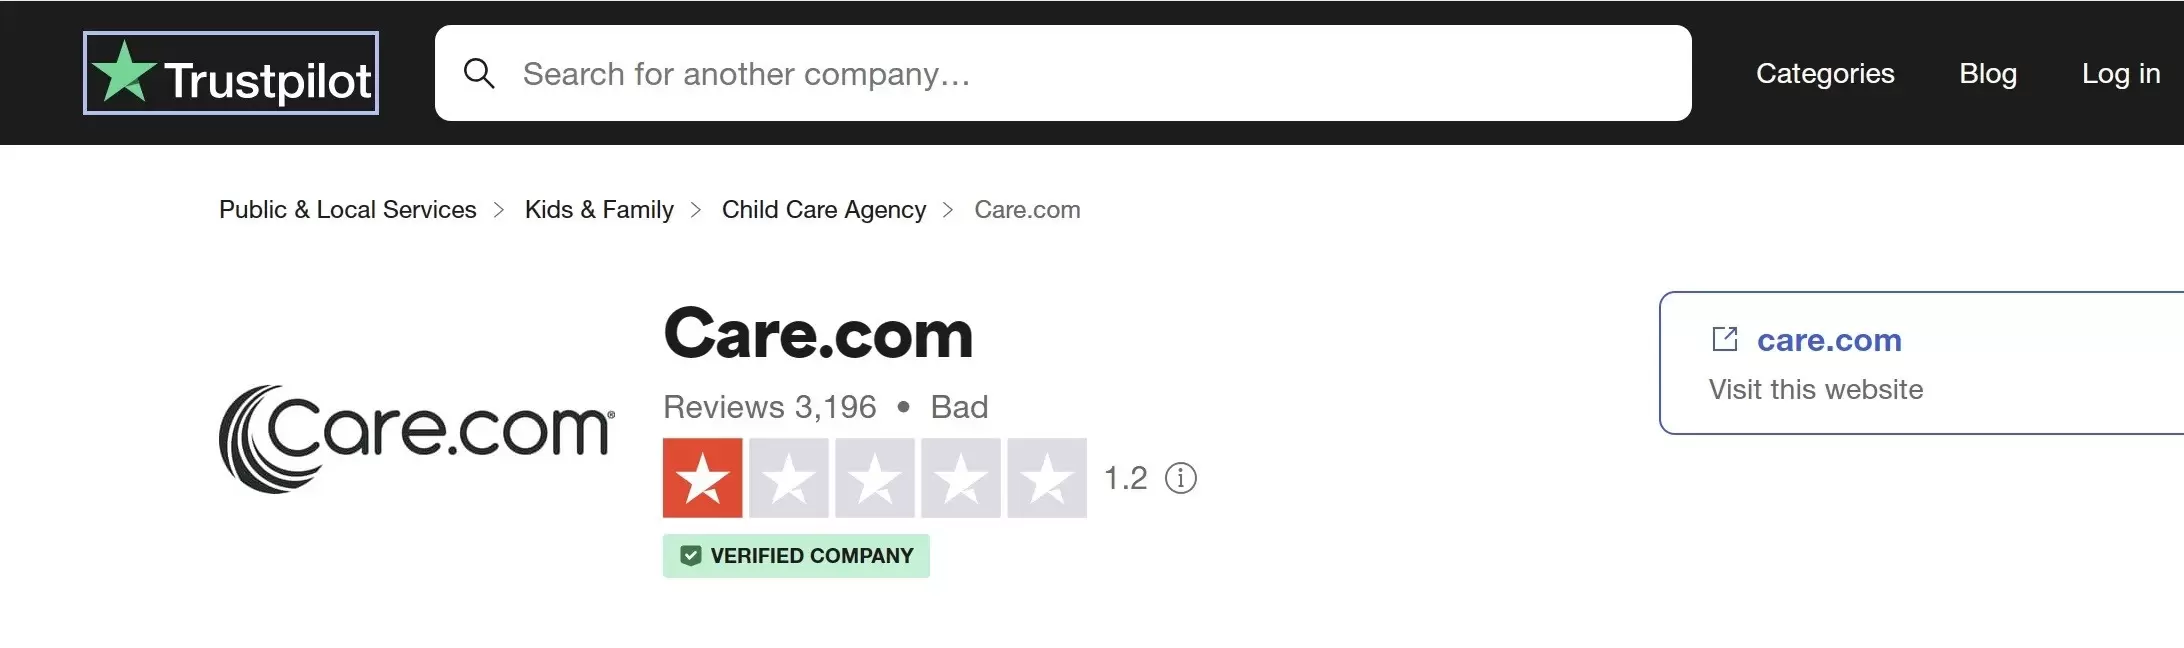 Care.com reviews and company profile